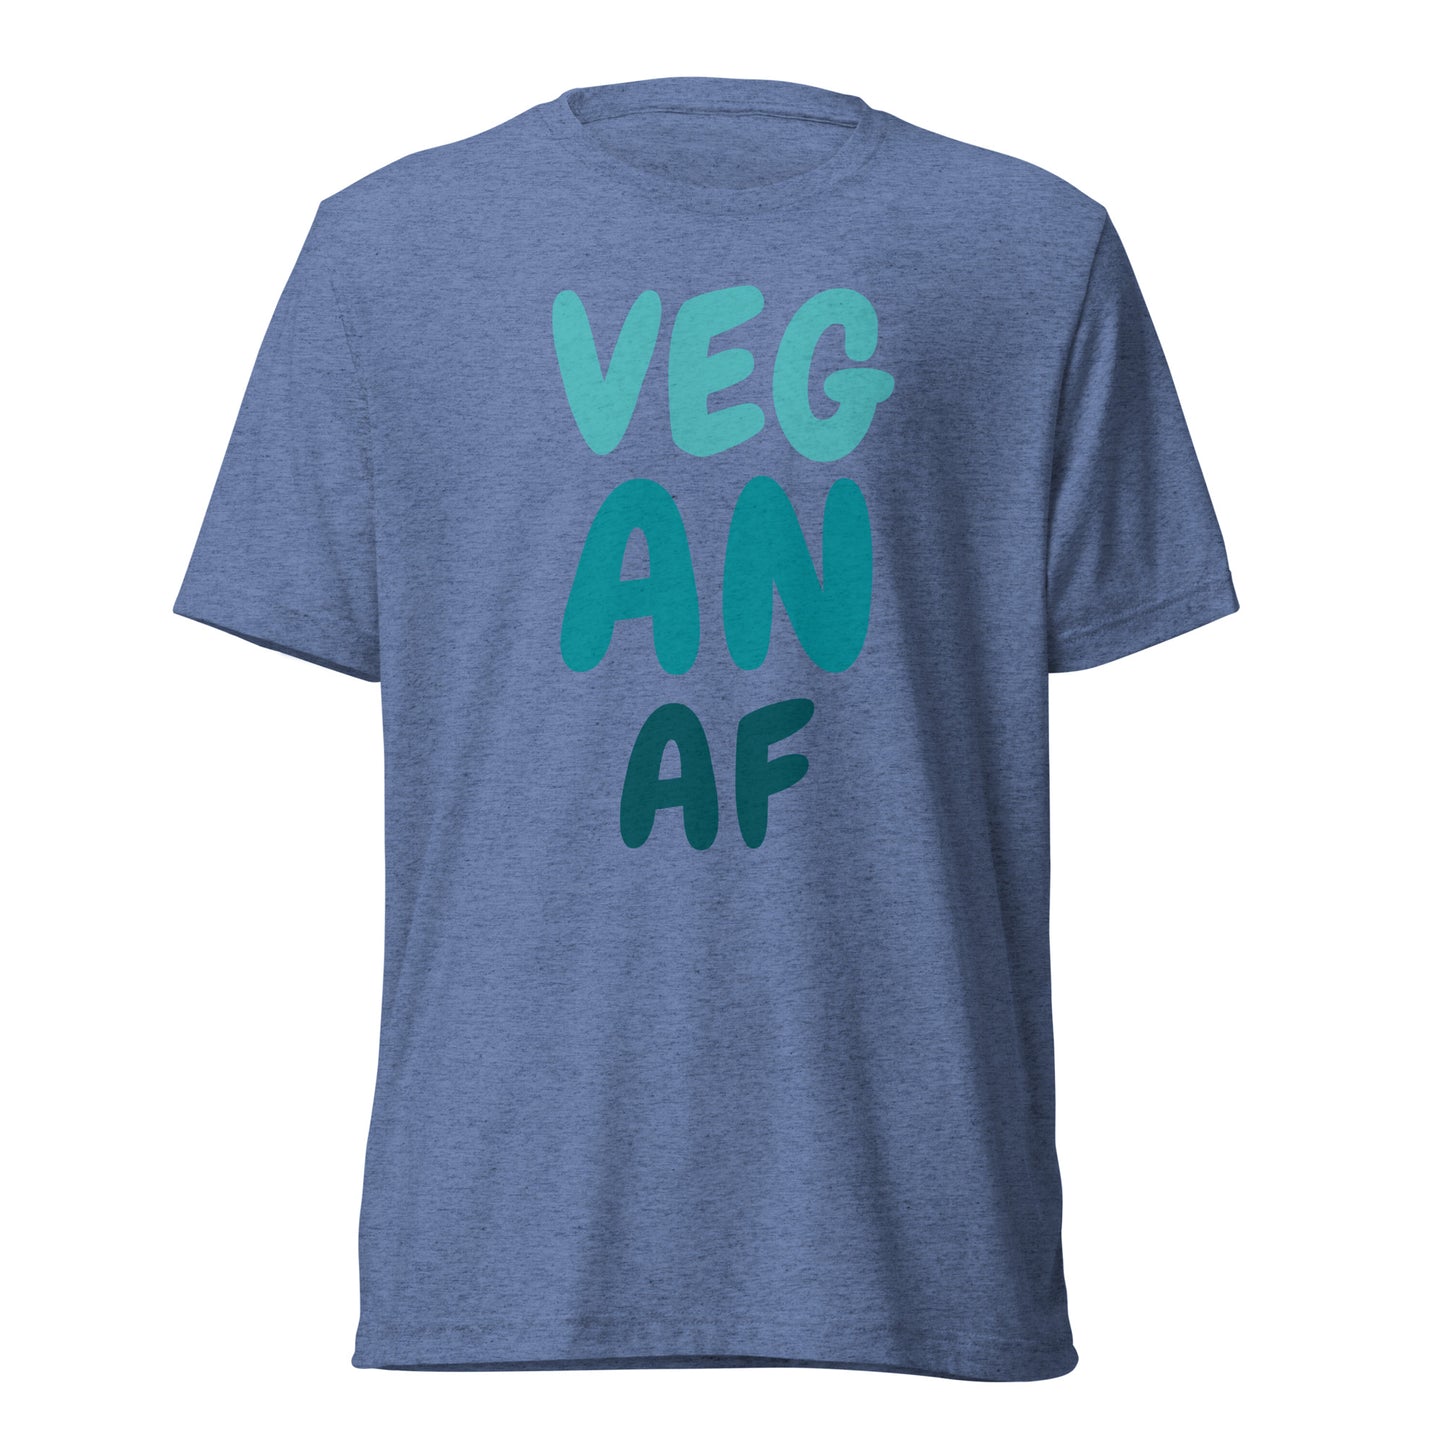 VEG AN AF Short sleeve t-shirt